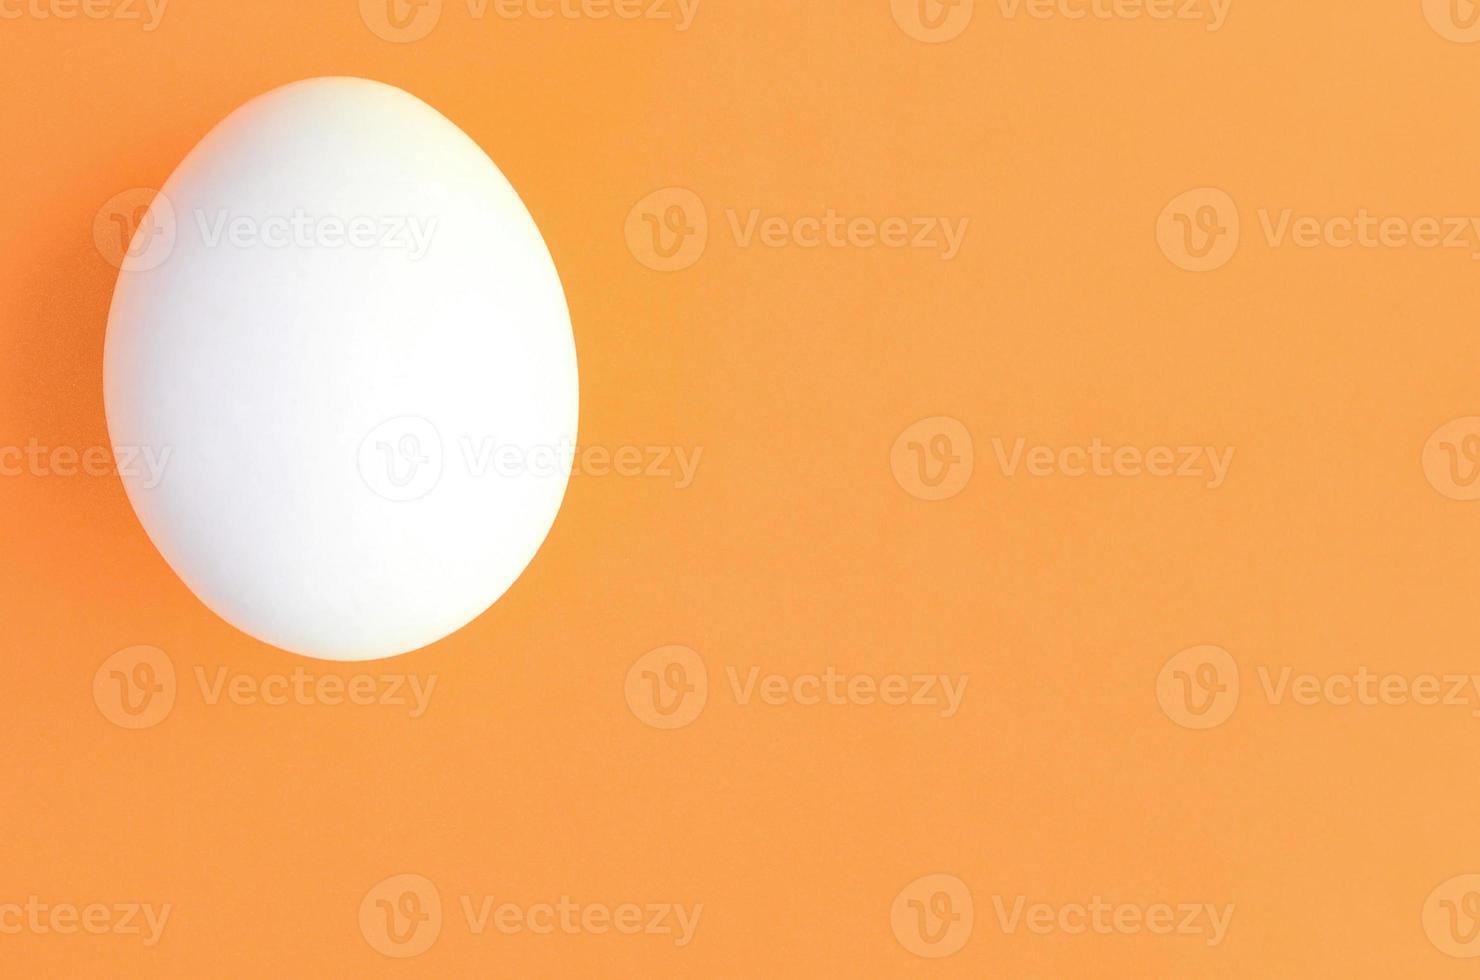 un huevo de pascua blanco sobre un fondo naranja brillante foto